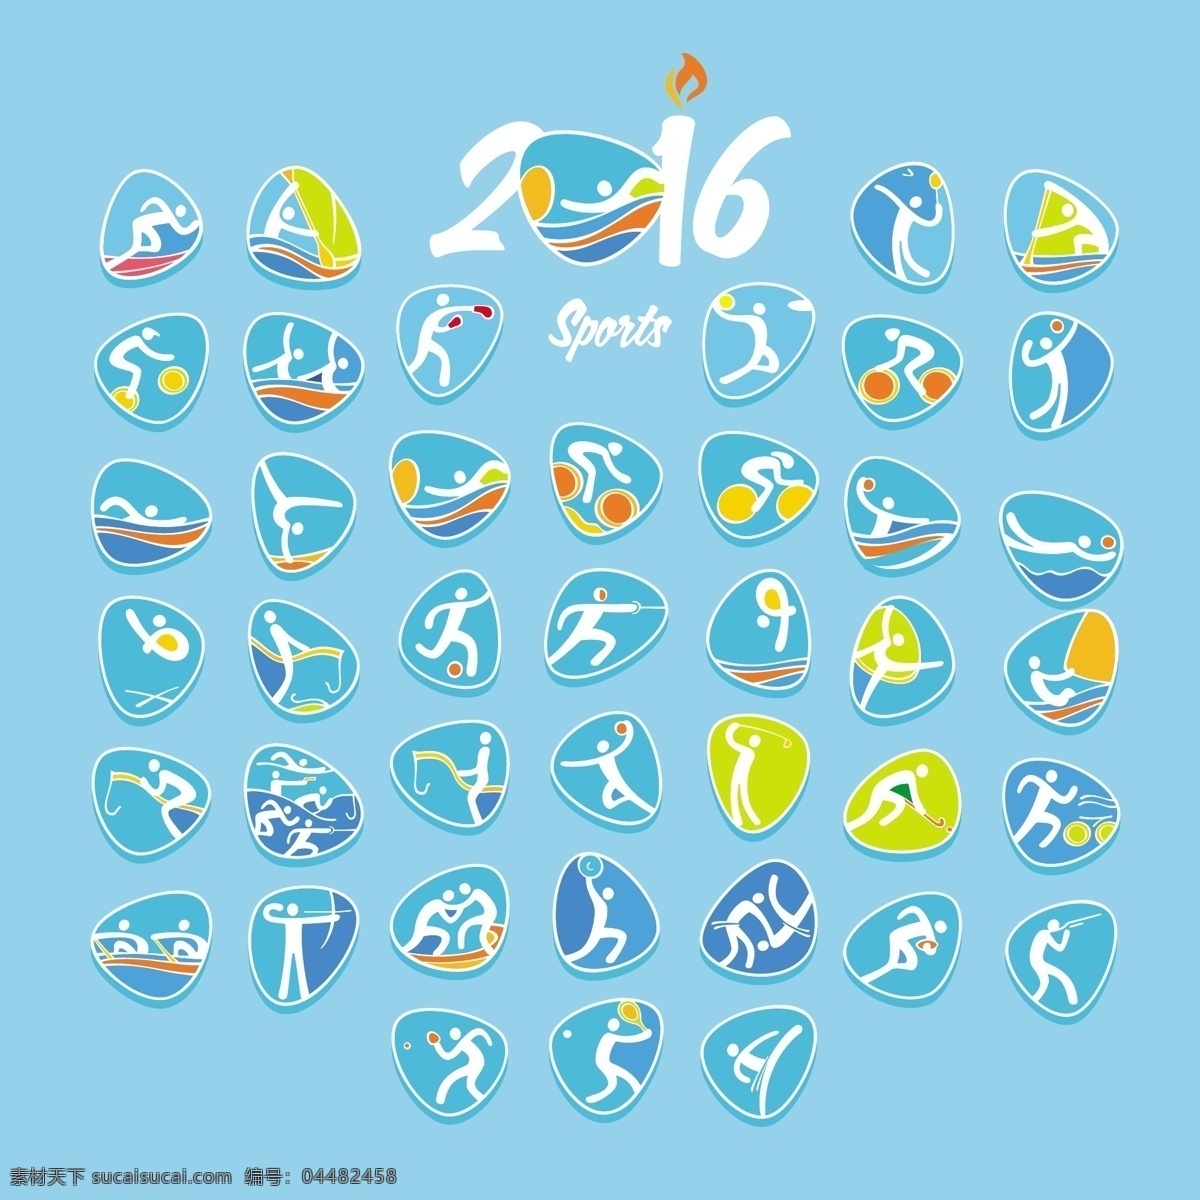 2016 巴西 奥运会 图标 背景 里约 体育 竞赛 banner 矢量